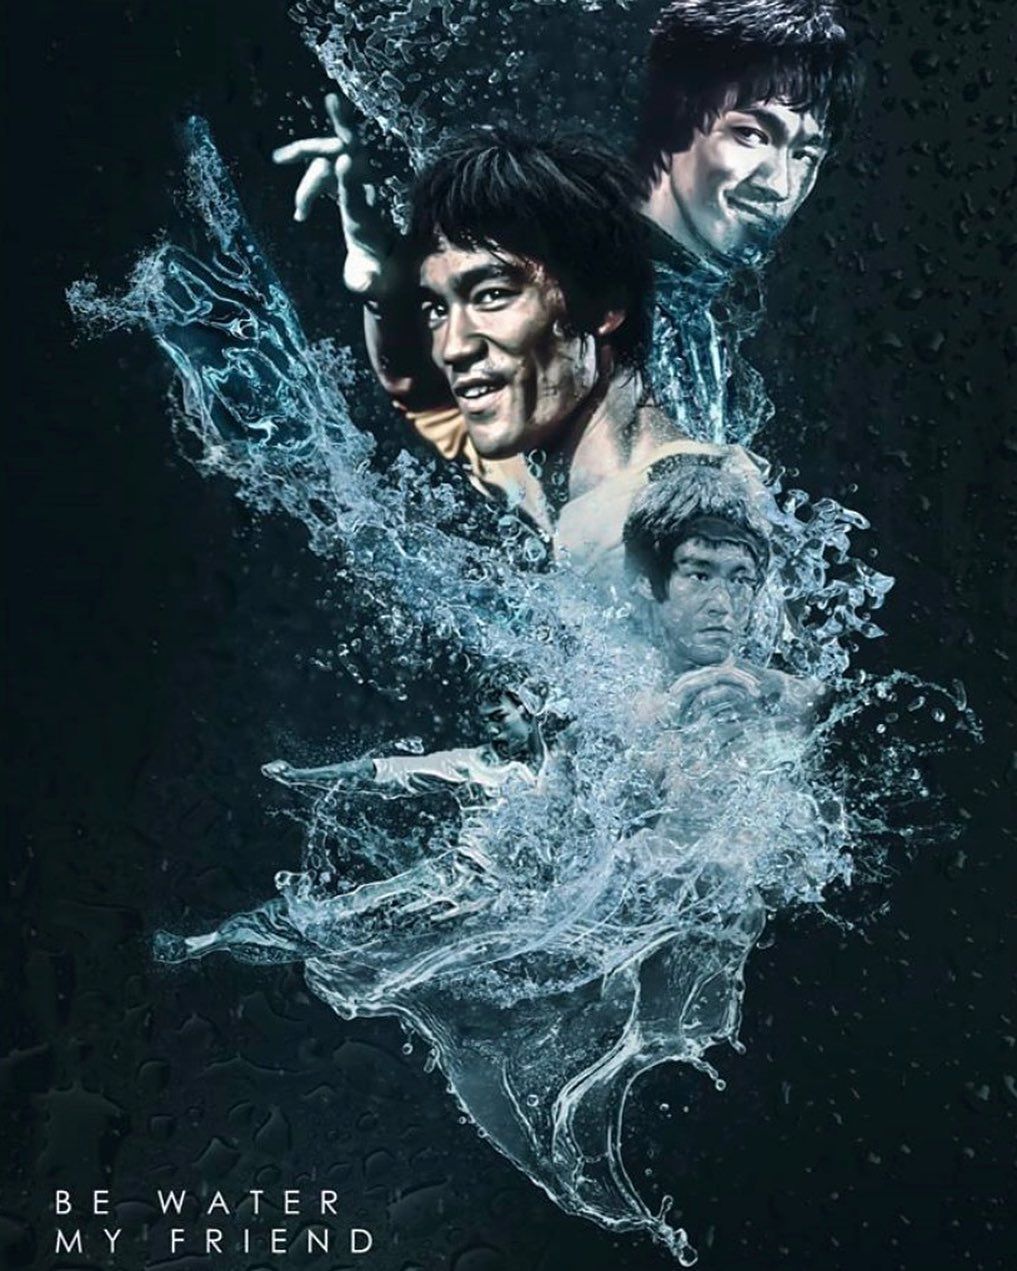 22+] Bruce Lee Be Water Wallpapers - WallpaperSafari